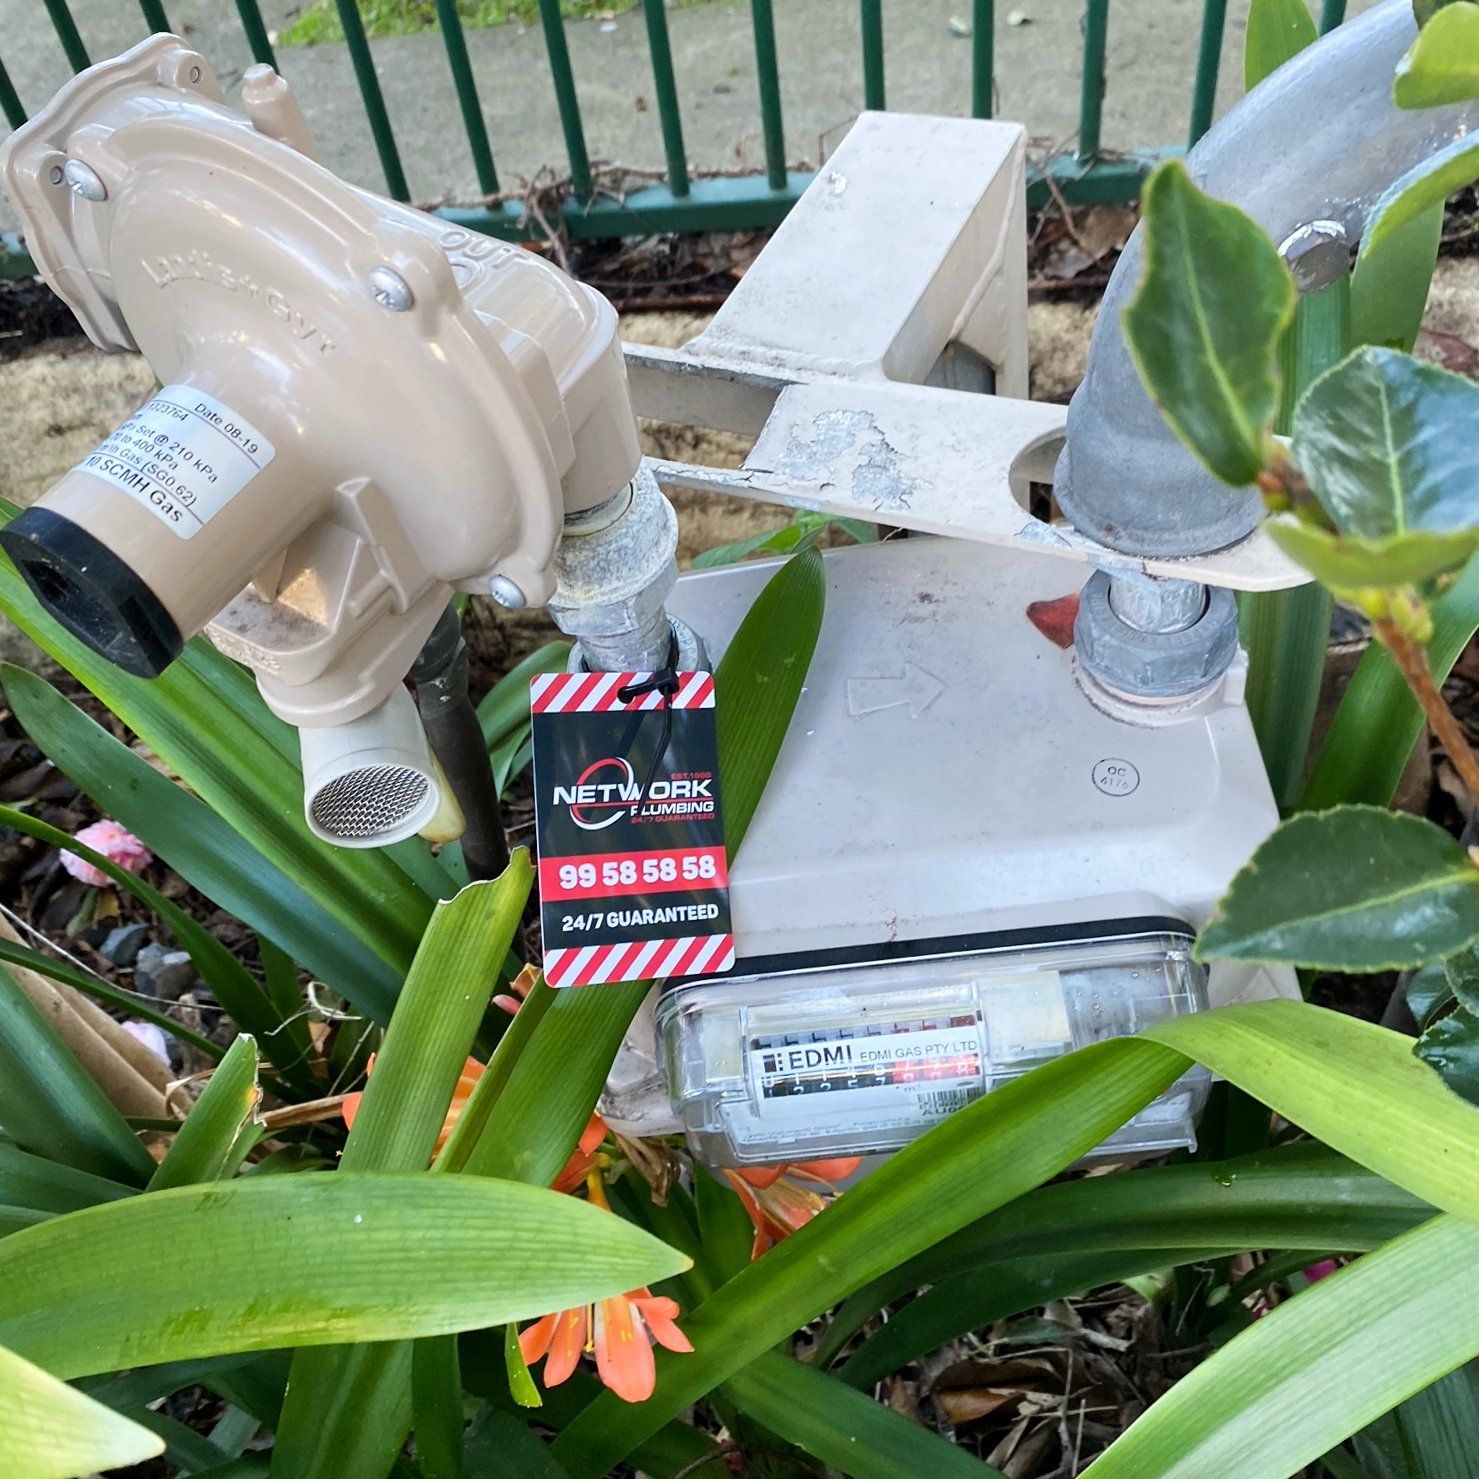 Network Plumbing gas meter emergency tag